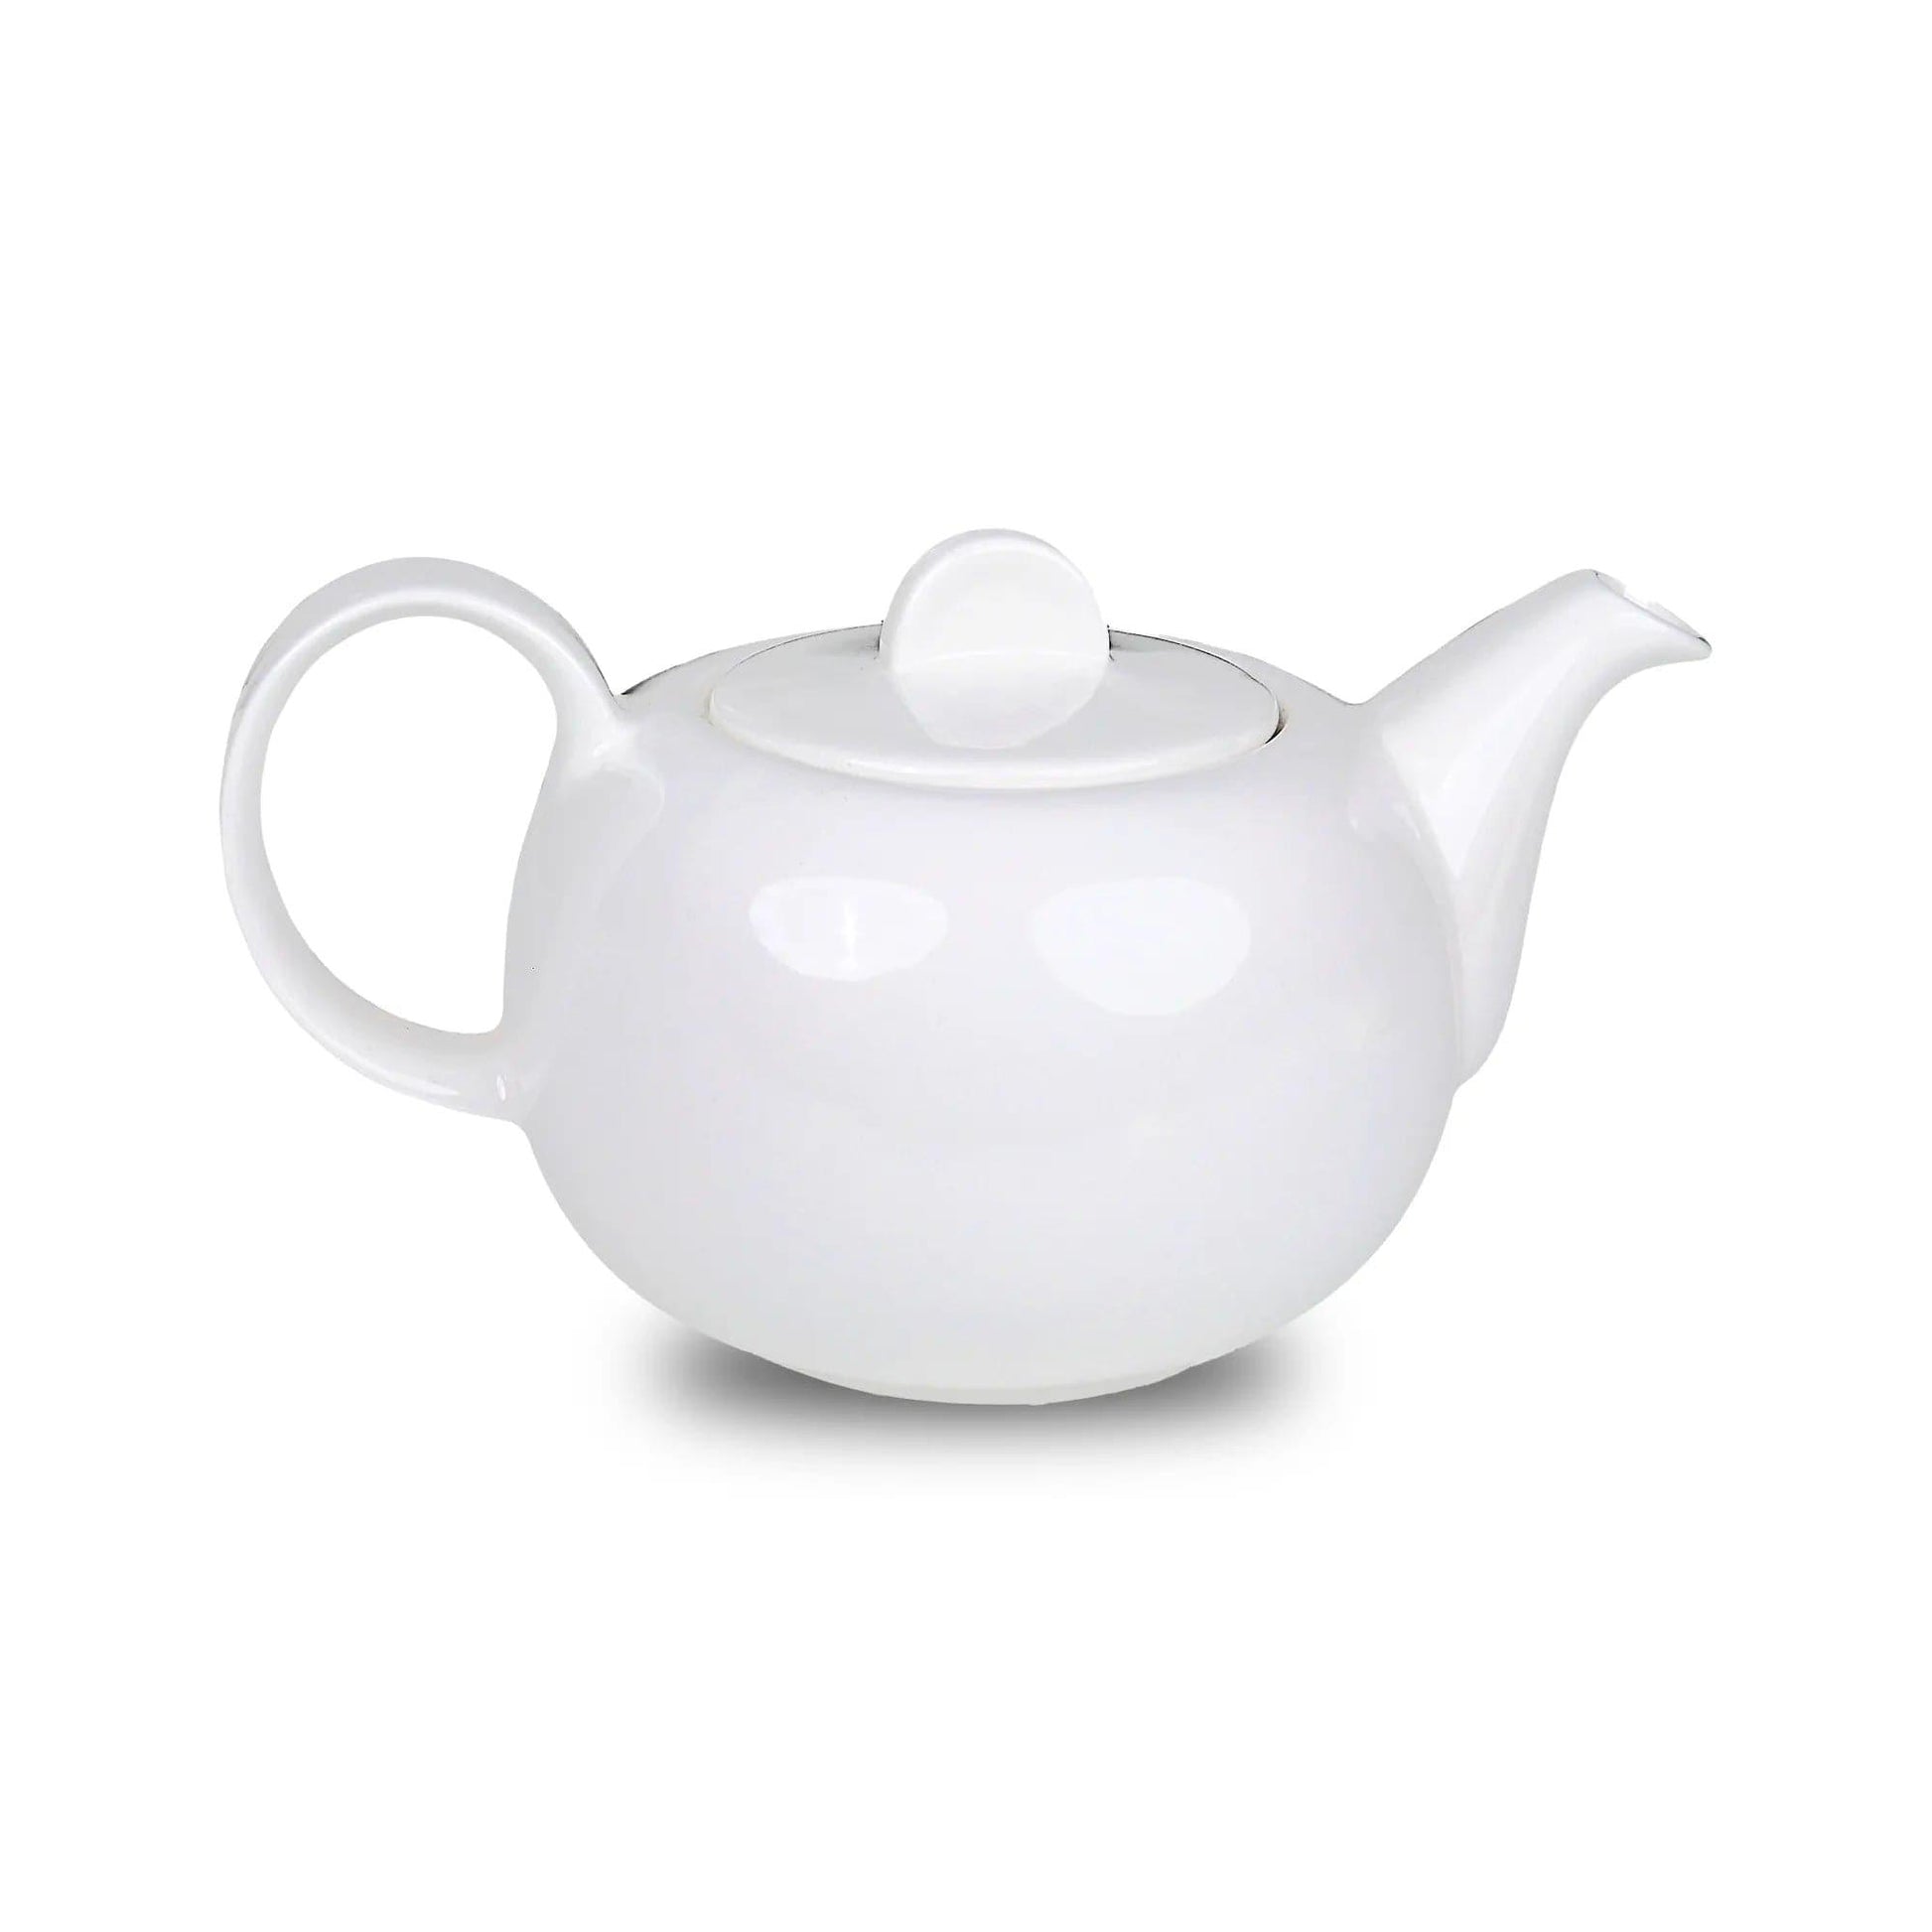 Furtino England Finesse 13.5oz/40cl White Round Porcelain Tea Pot - HorecaStore